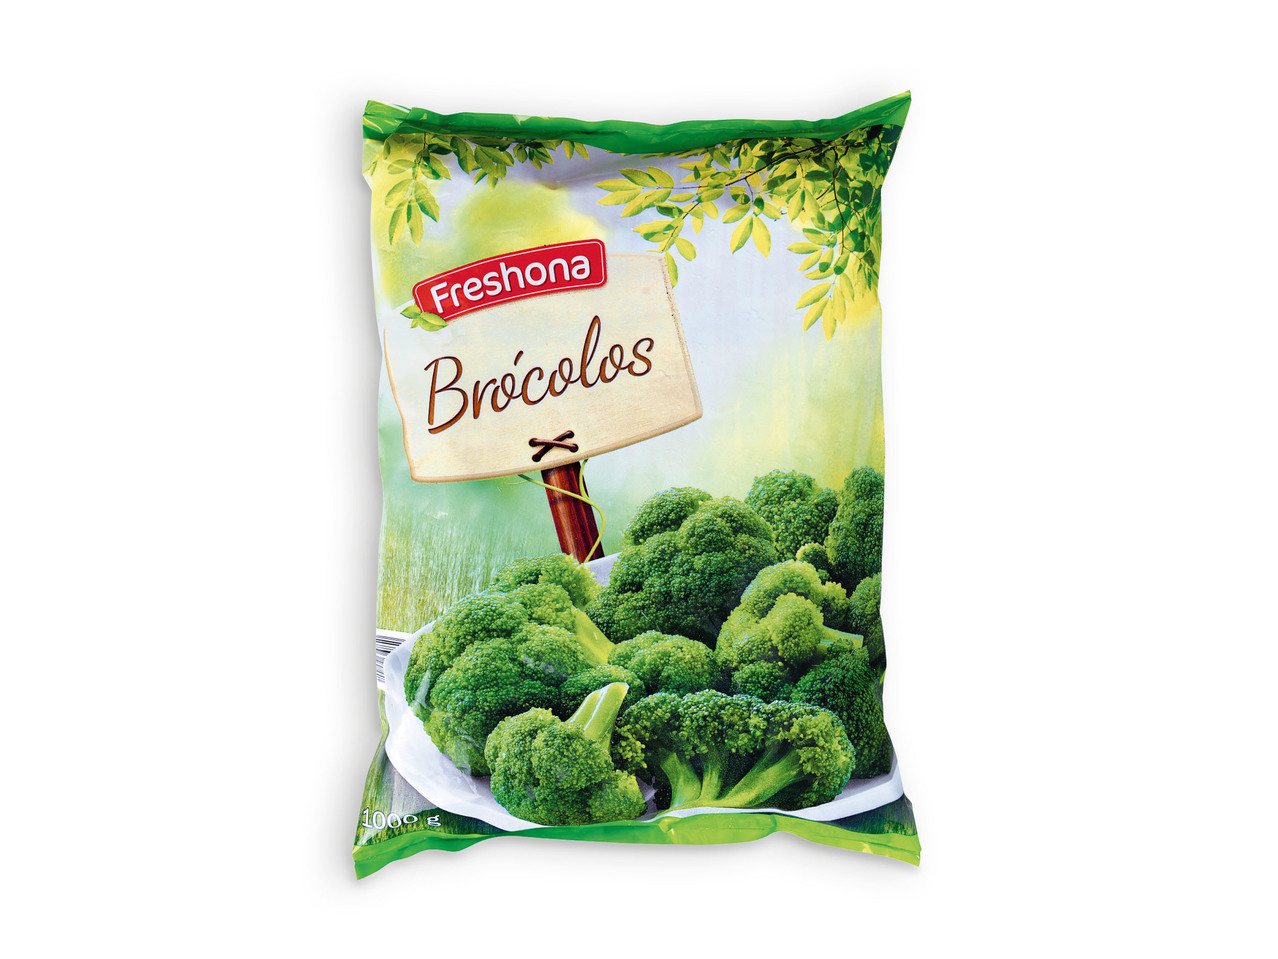 FRESHONA(R) Brócolos